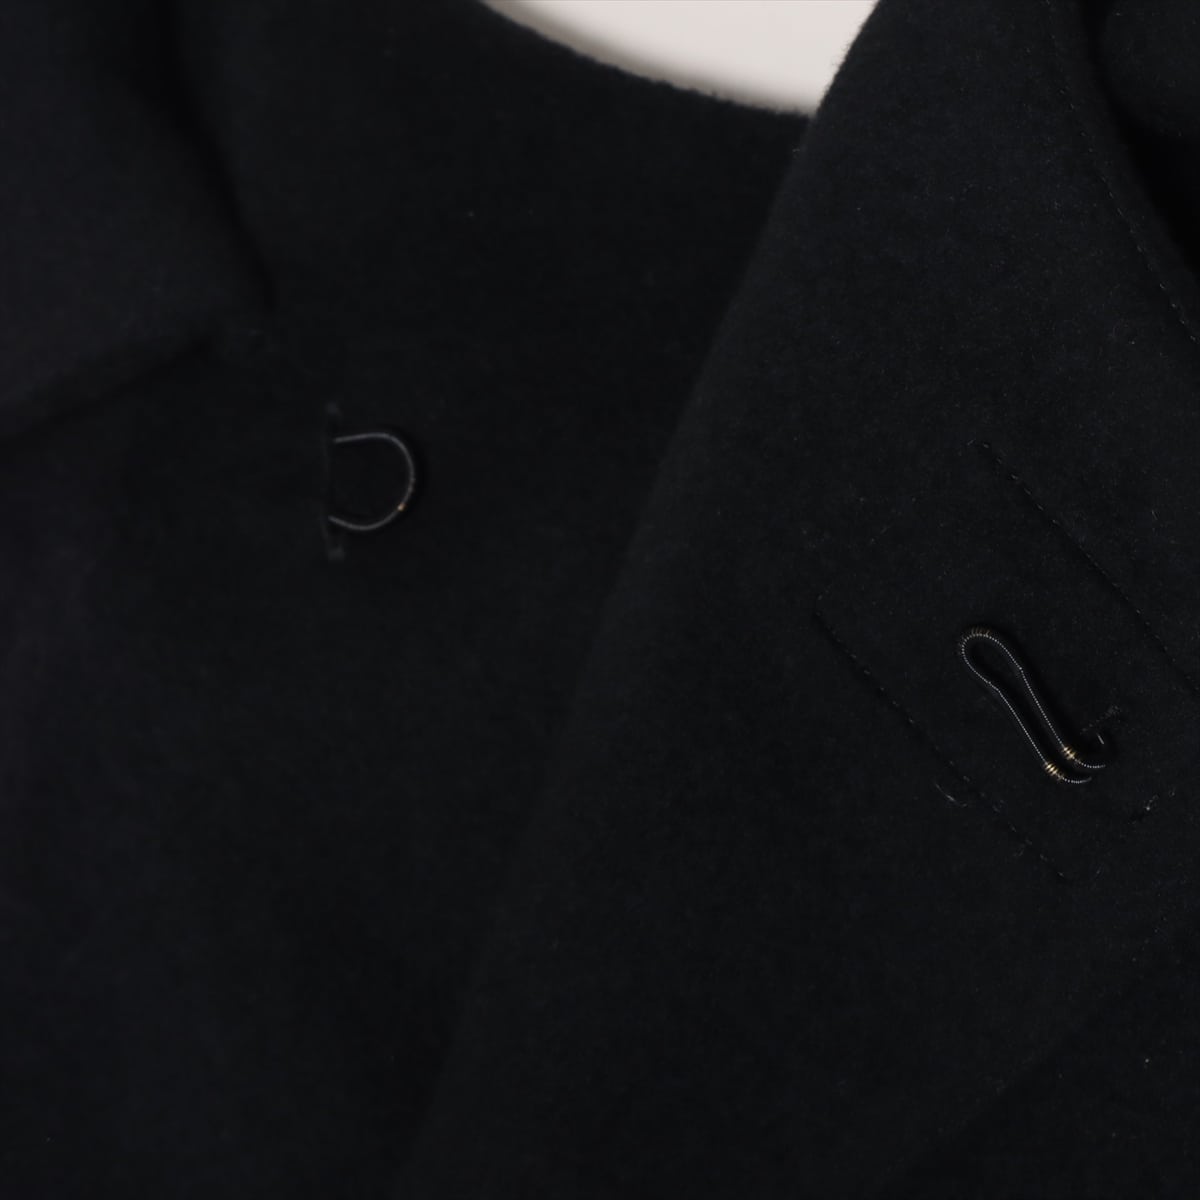 Comme des Garçons 19AW Hair & cashmere Long coat S Ladies' Black  GD-C005  Double sleeves